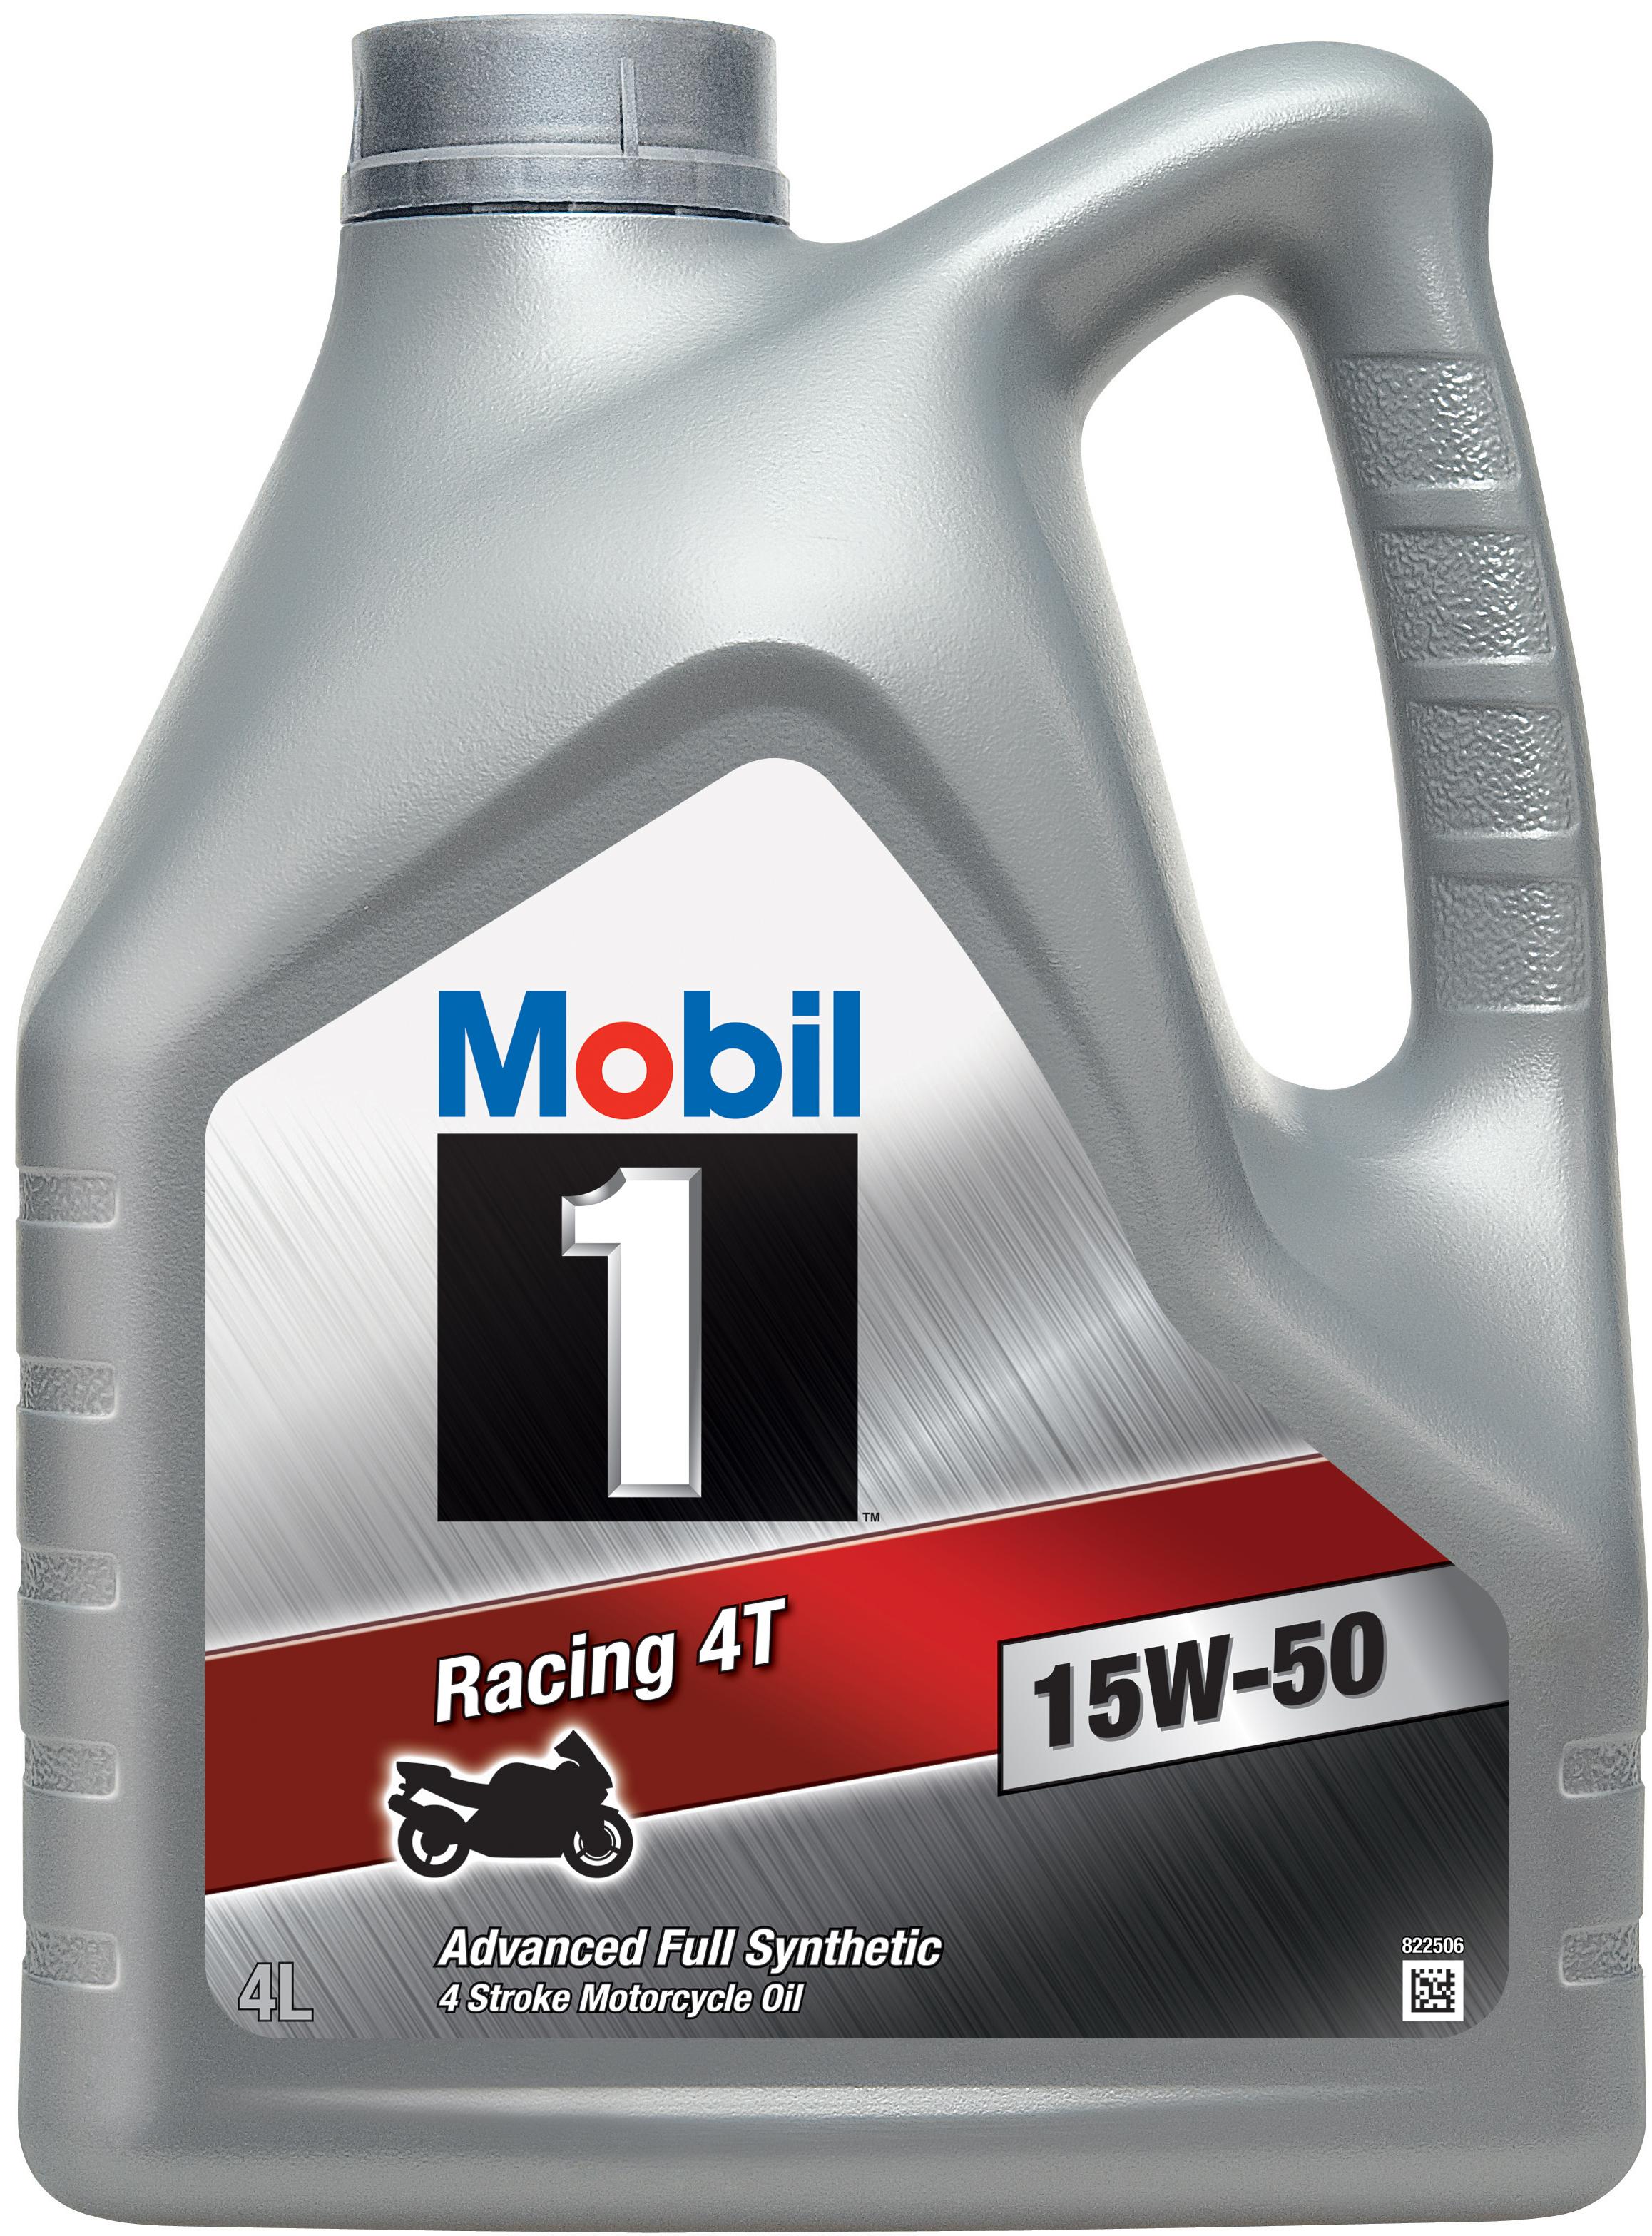 Mobil 1 Racing 4T 15W-50 4L